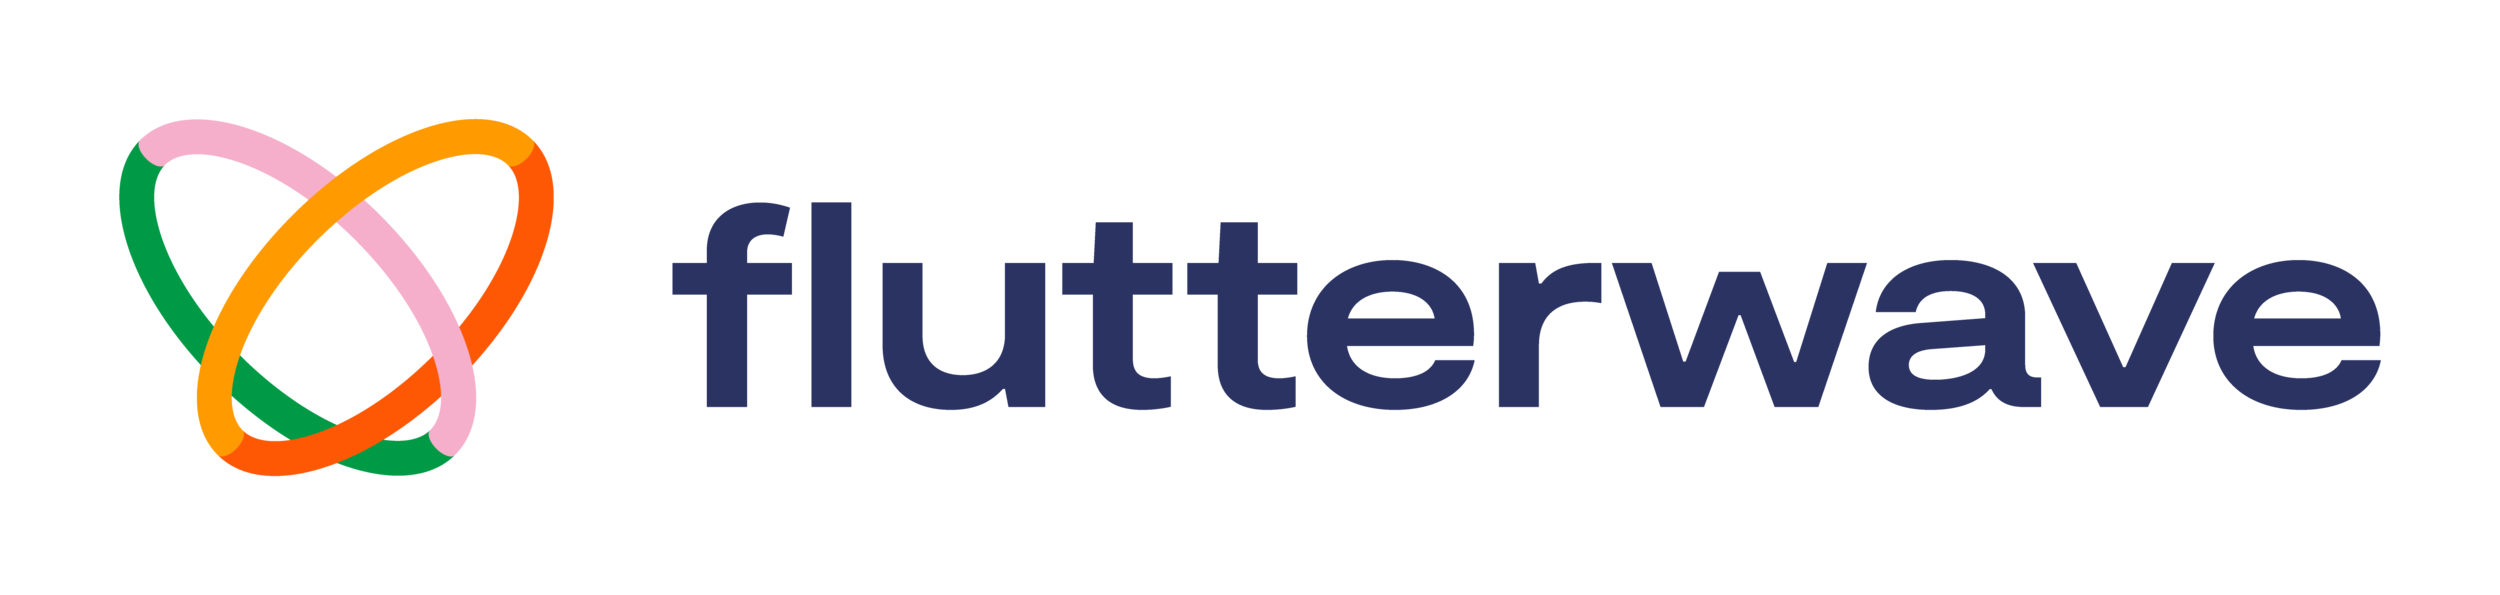 flutterwave logo.png